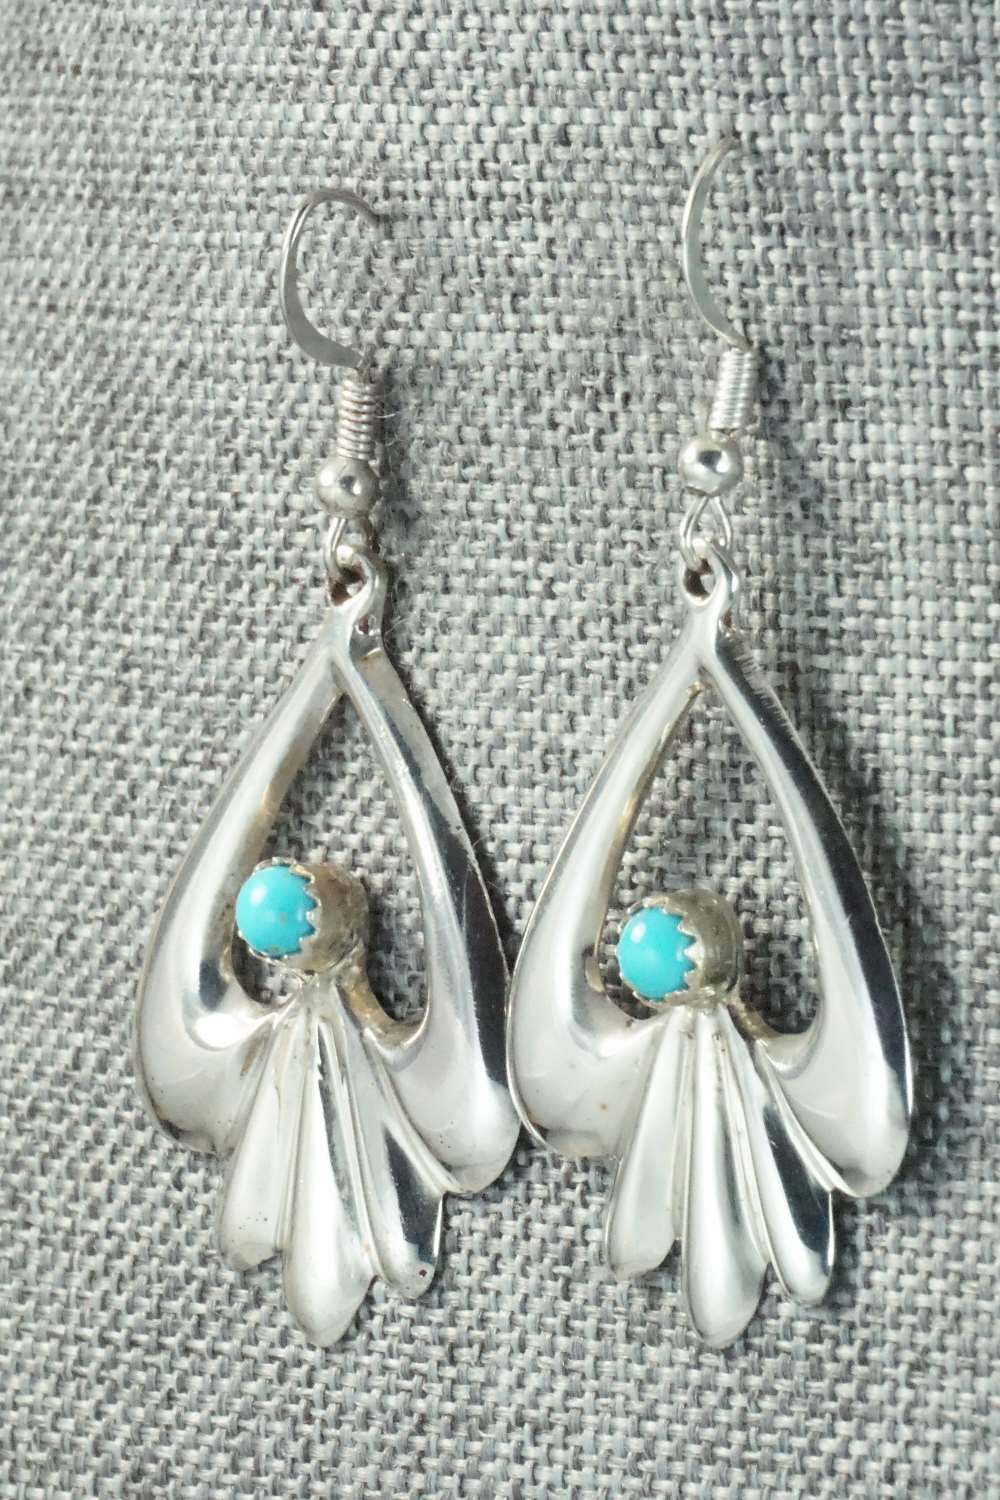 Turquoise & Sterling Silver Earrings - Mildred Parkhurst